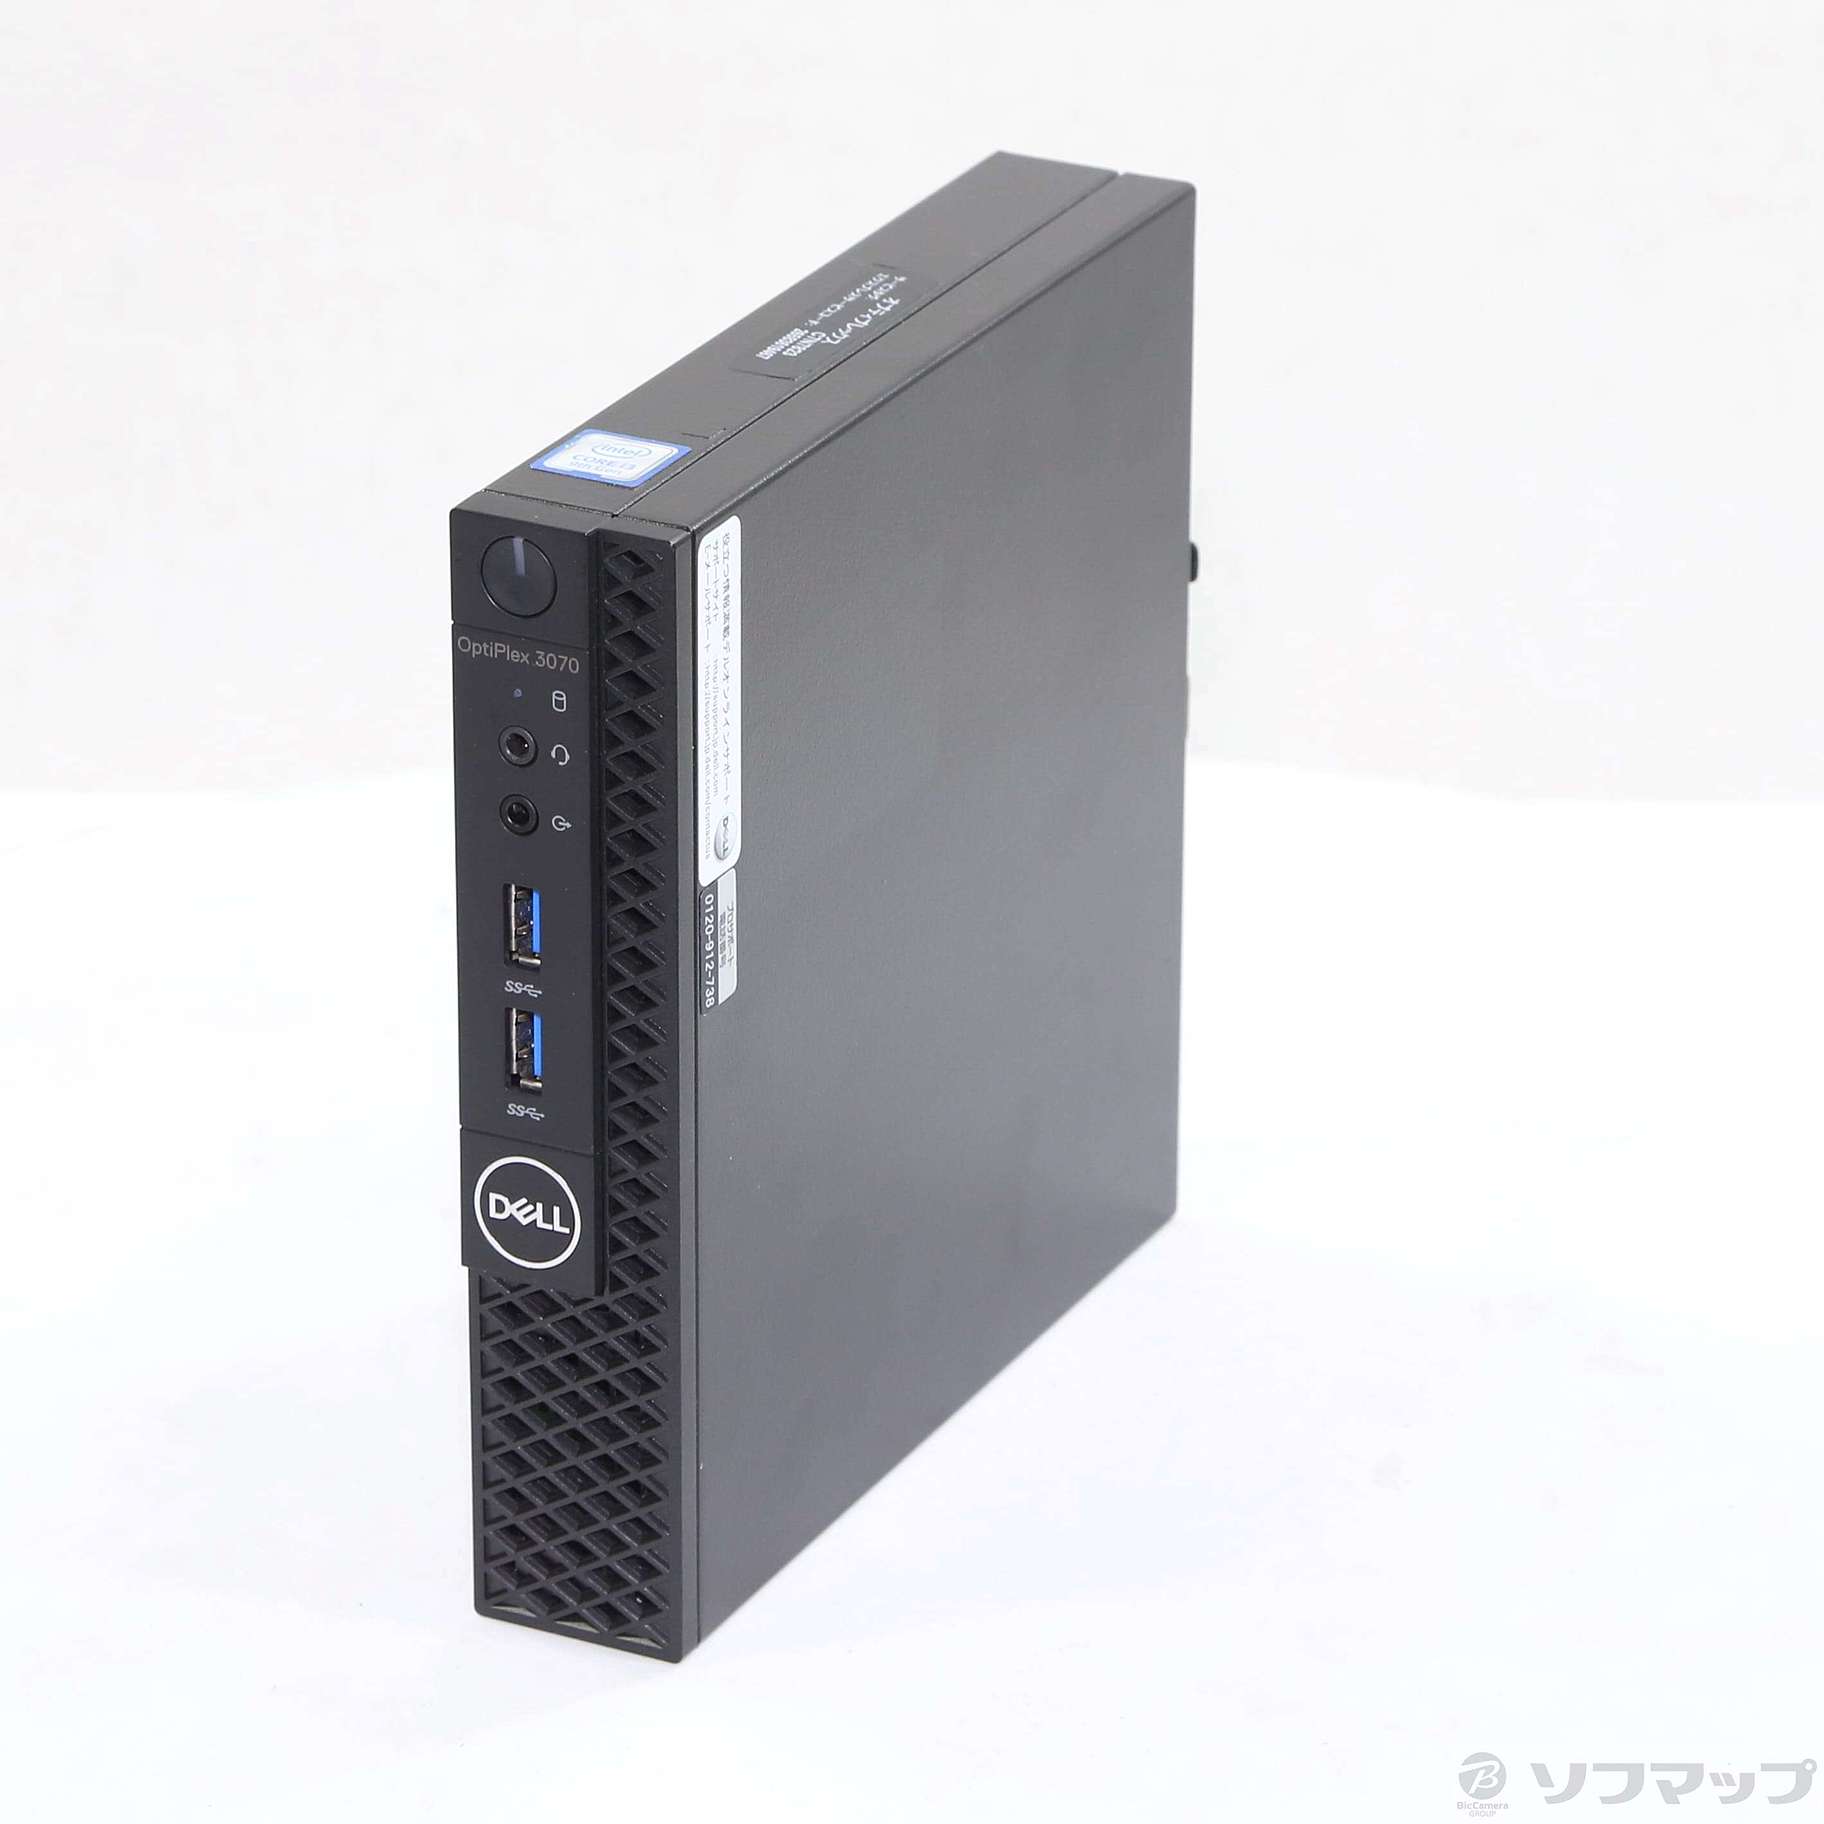 (中古)DELL OptiPlex 3070 Micro(371-ud)